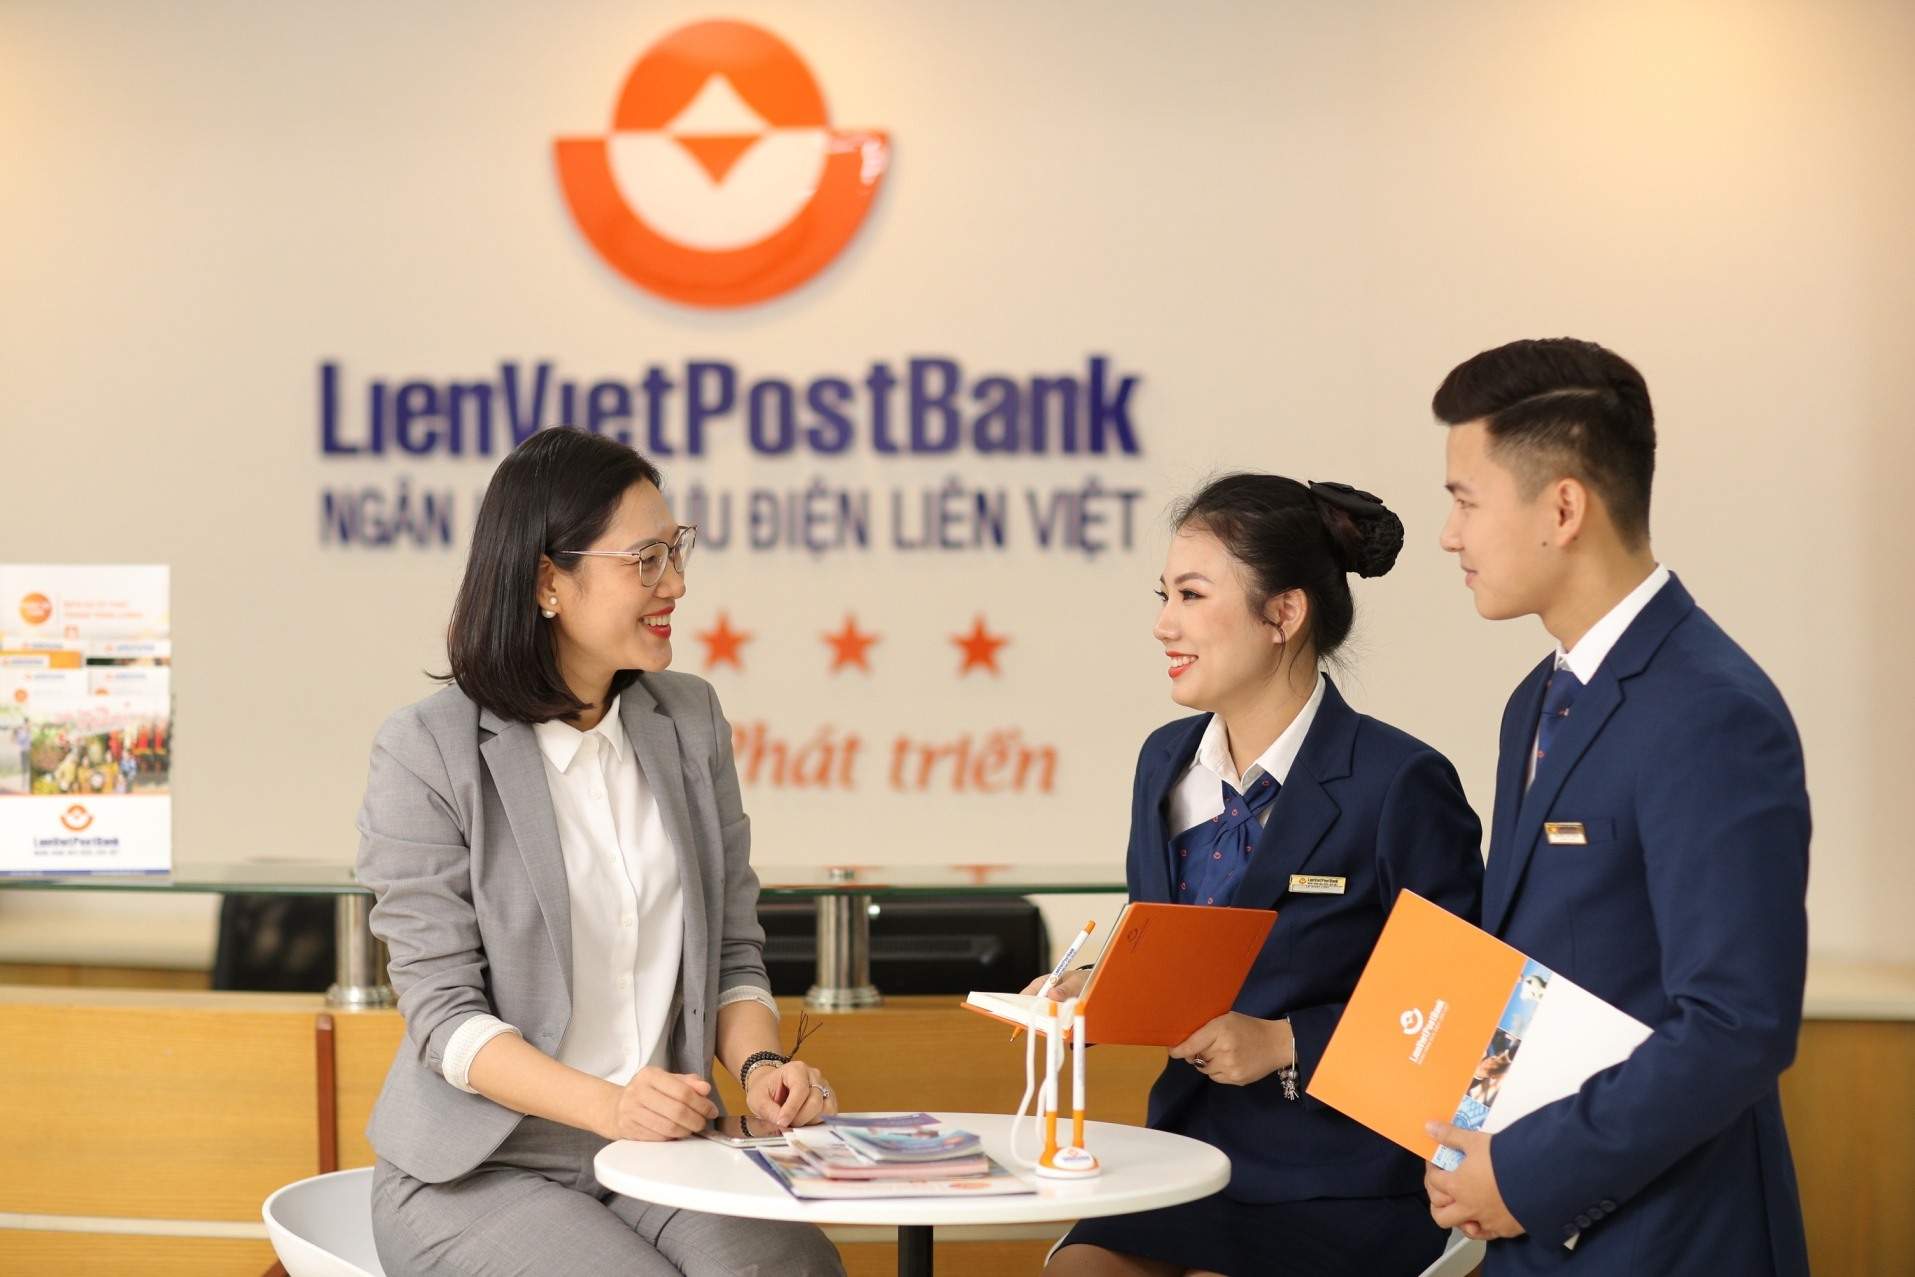 Ngân hàng Lienvietpostbank (Ảnh minh họa)